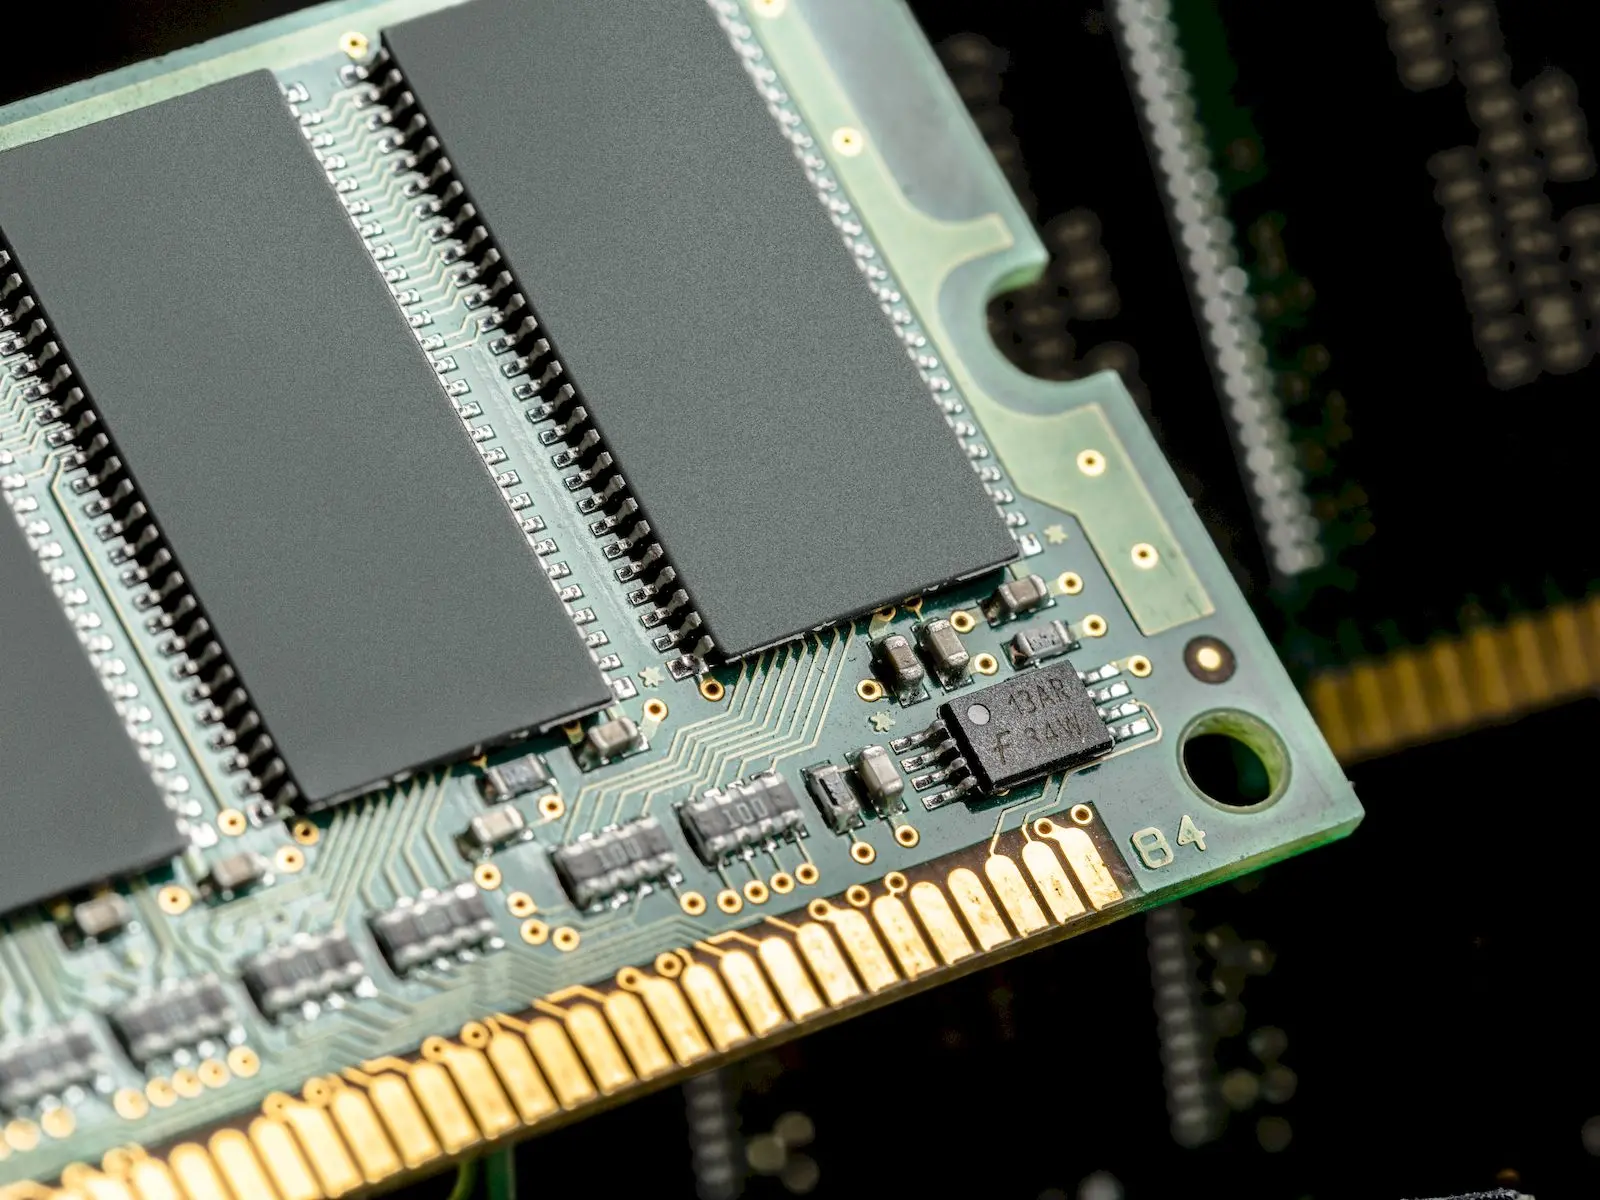 System ram. Чип технология. Ddr4 одноранговая и двухранговая разница для lga2011. Как устроена Оперативная память компьютера под микроскопом.